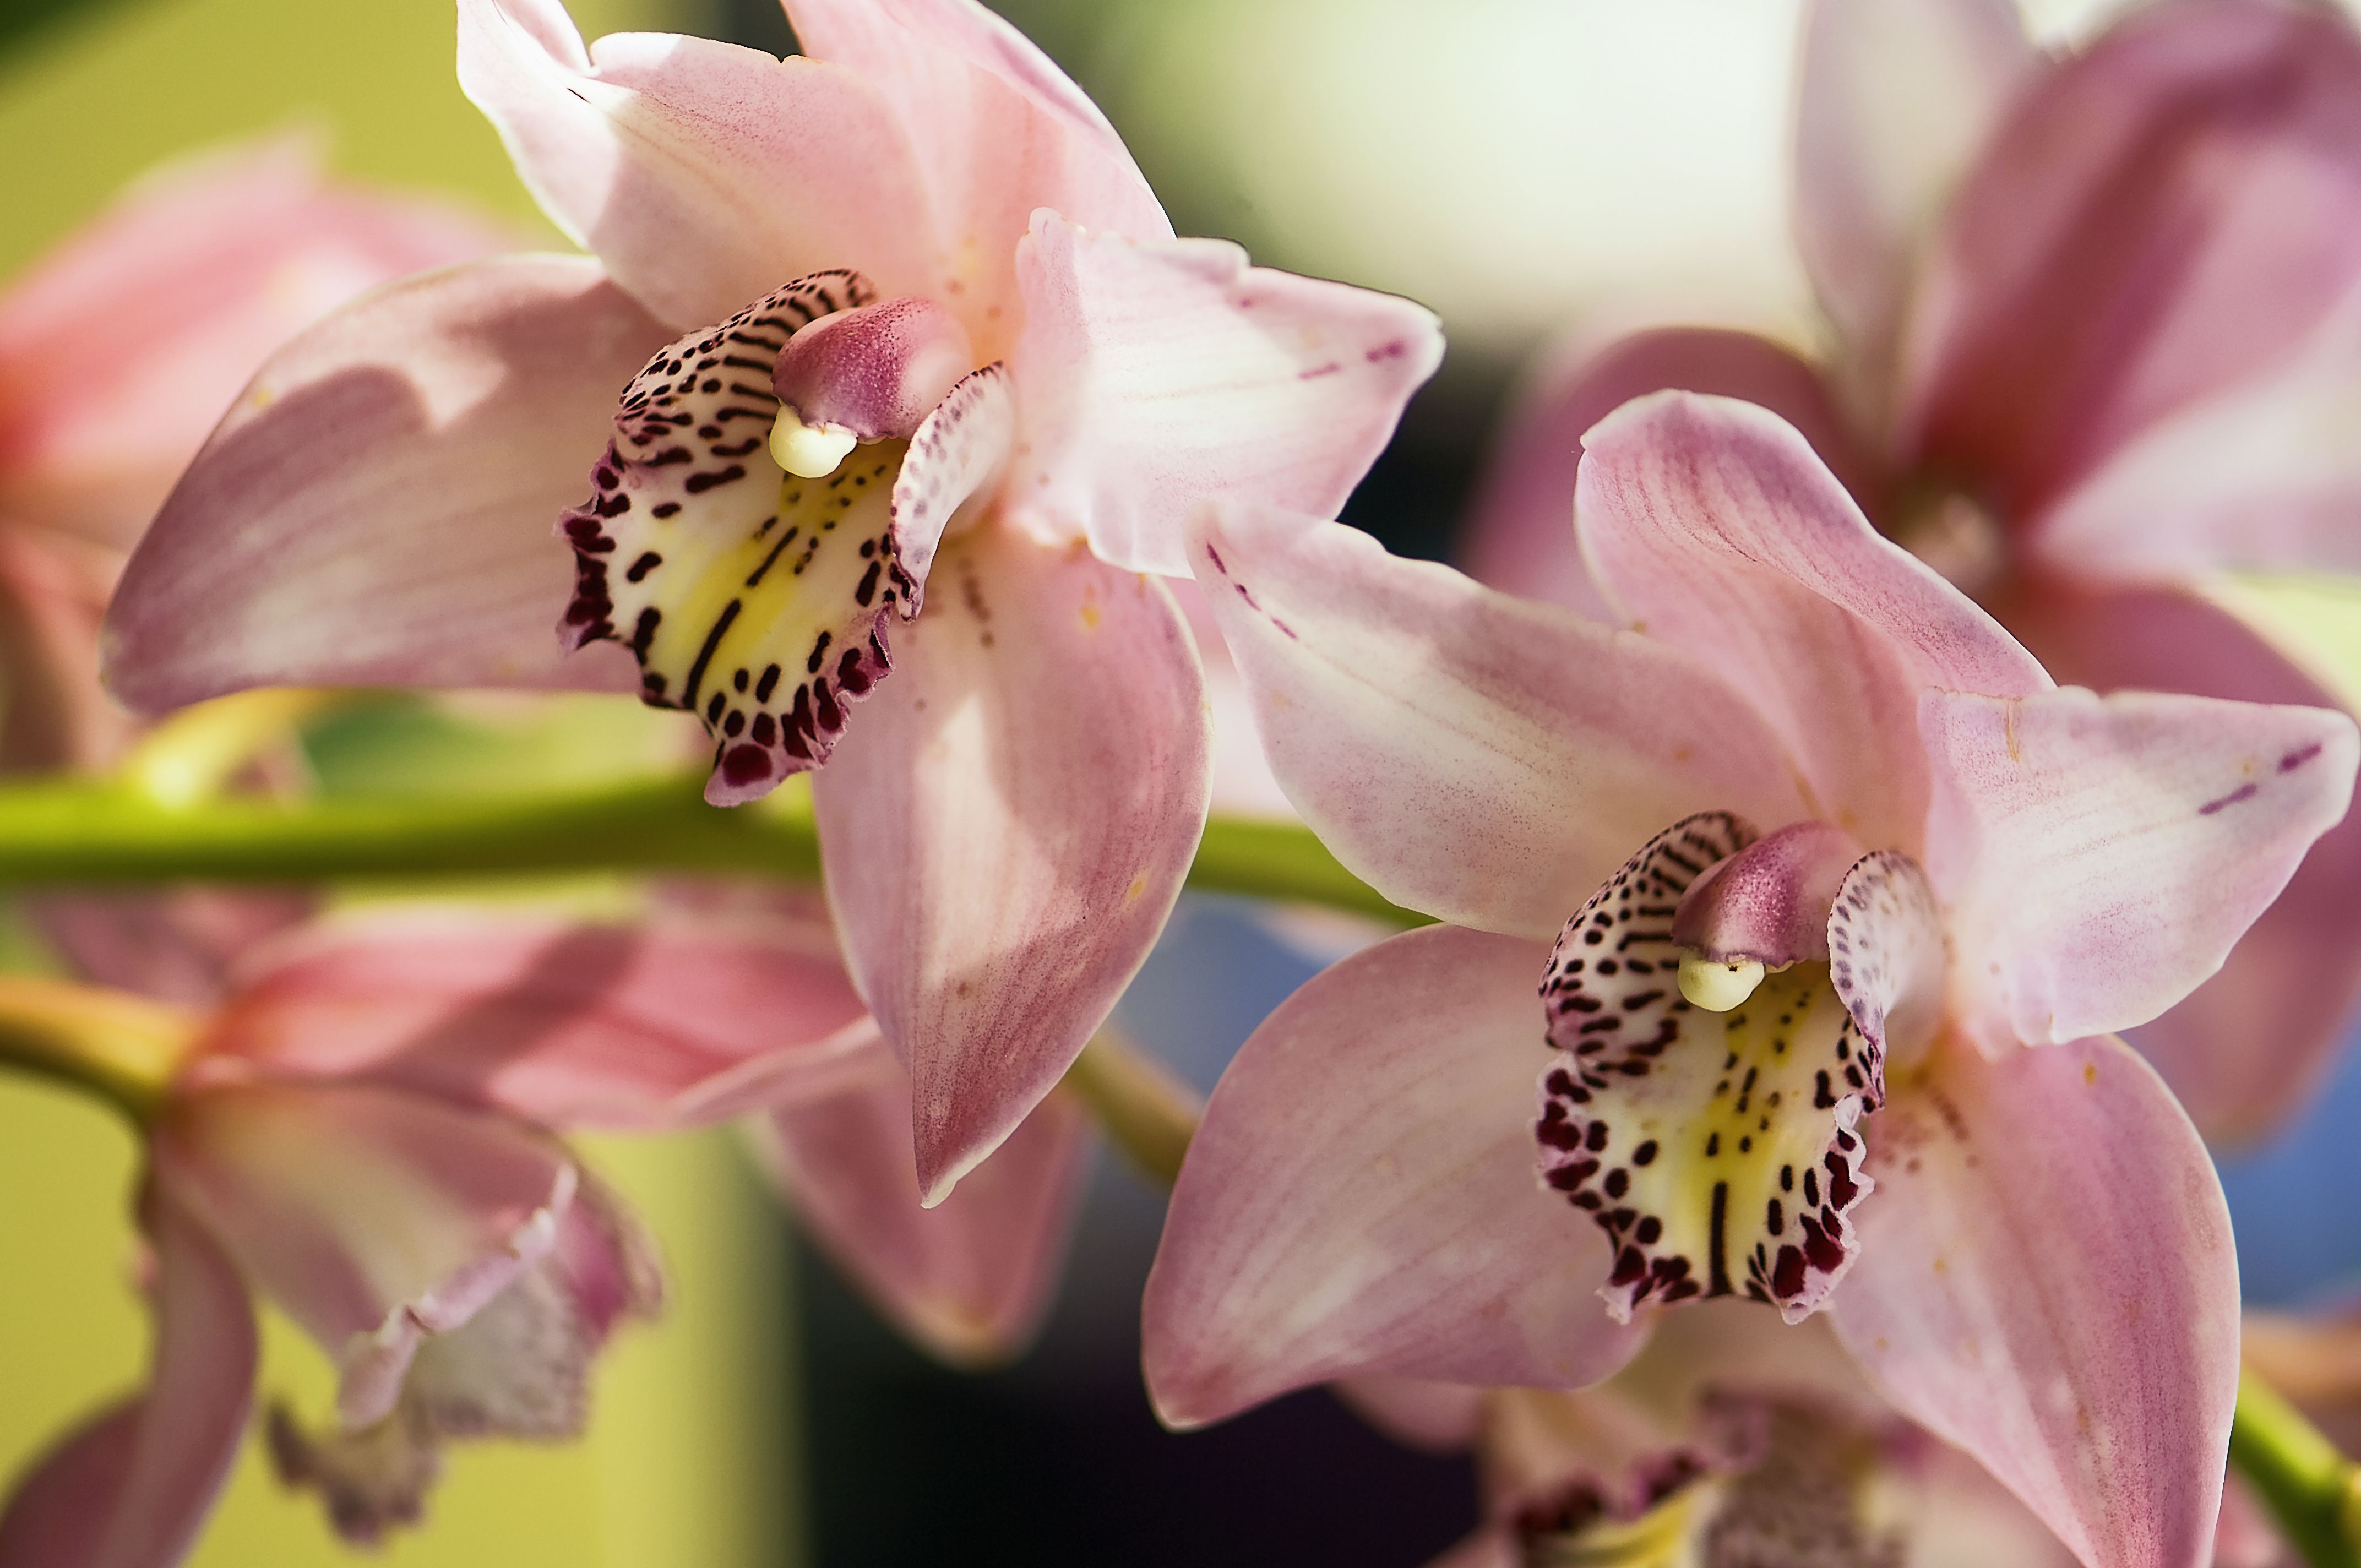 Цимбидиум – многообразие форм и оттенков. описание видов орхидеи и рекомендации по уходу в домашних условиях